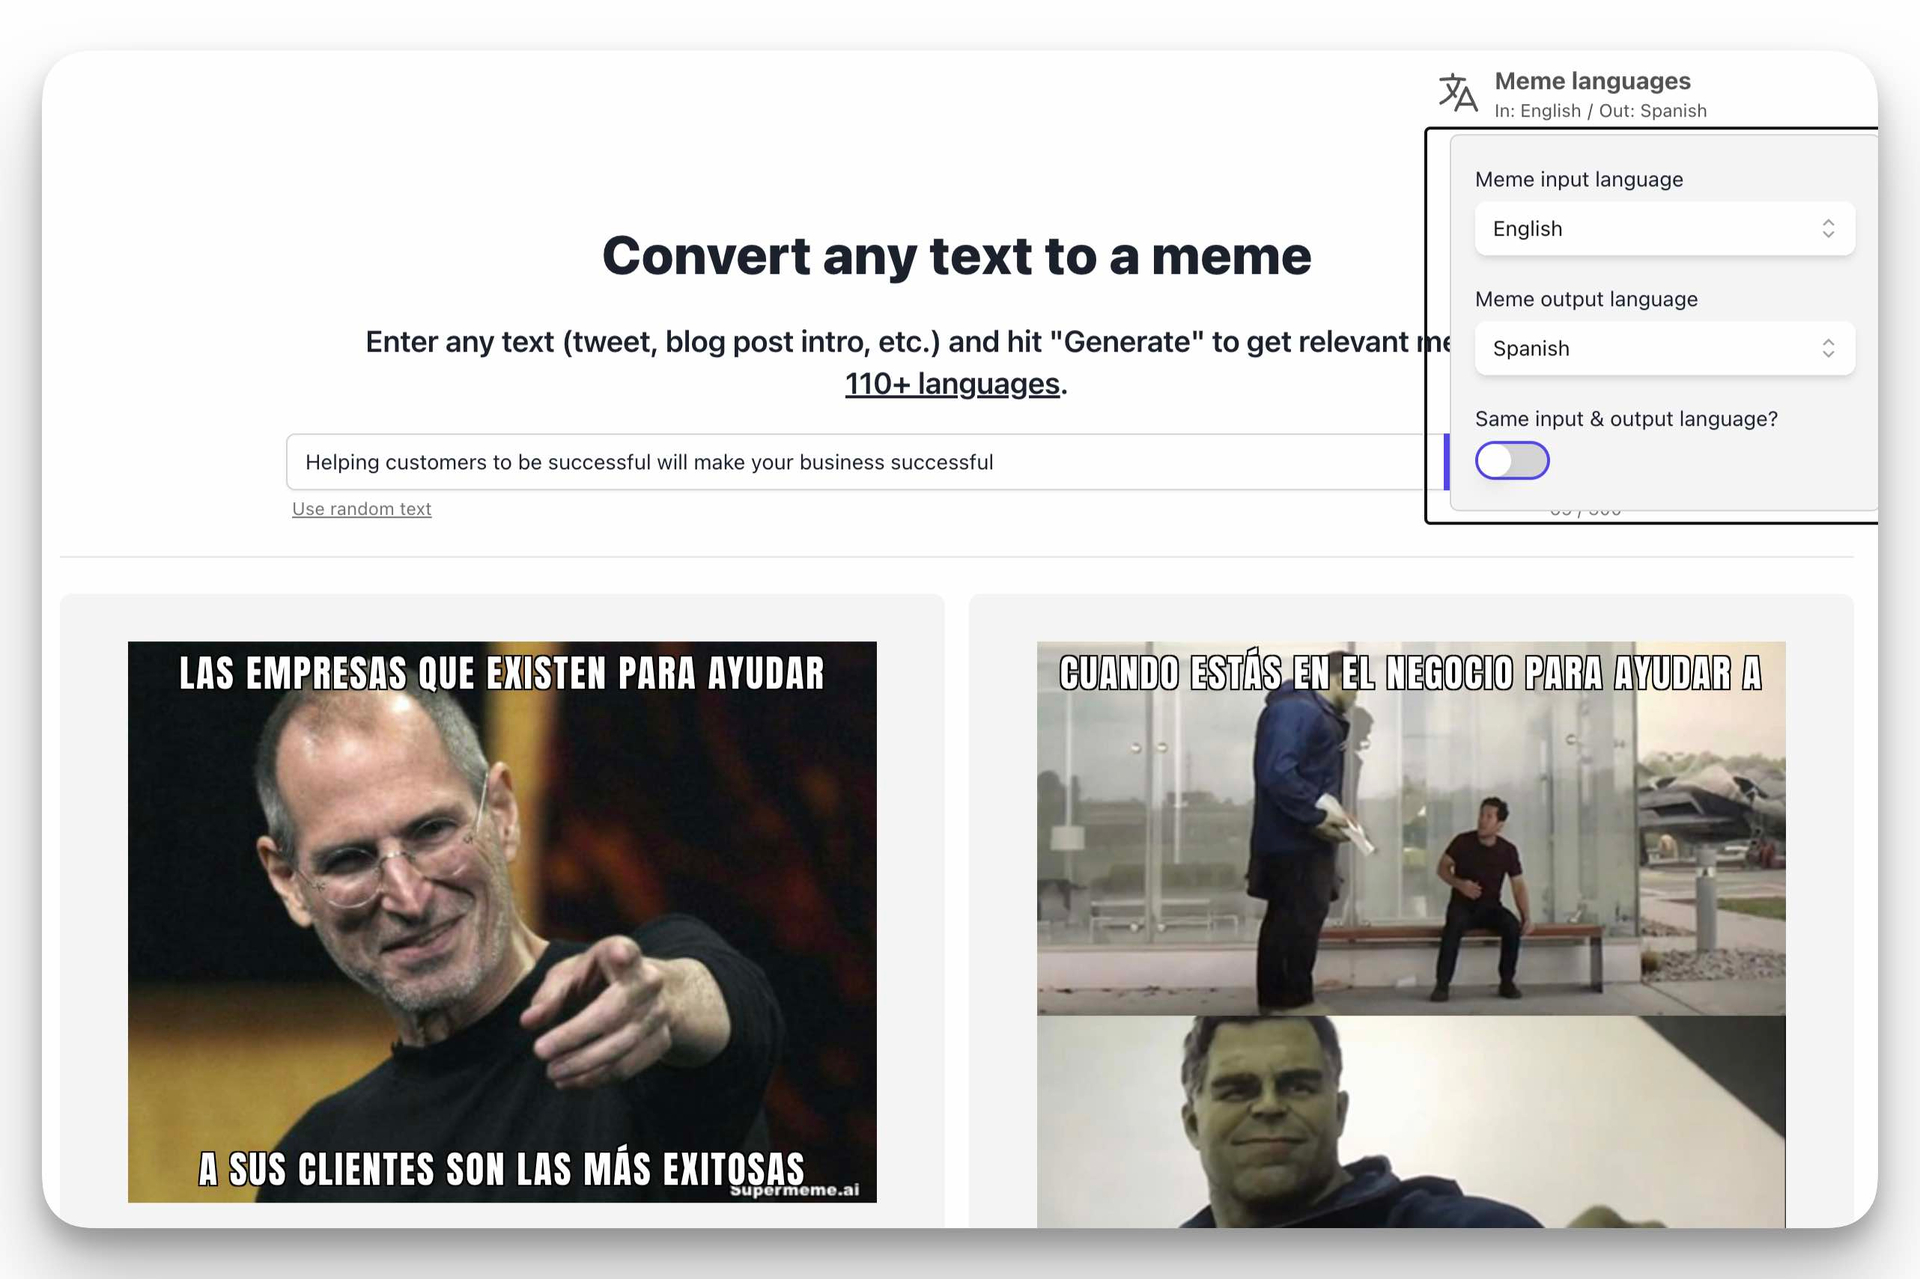 generate memes in 110 languages